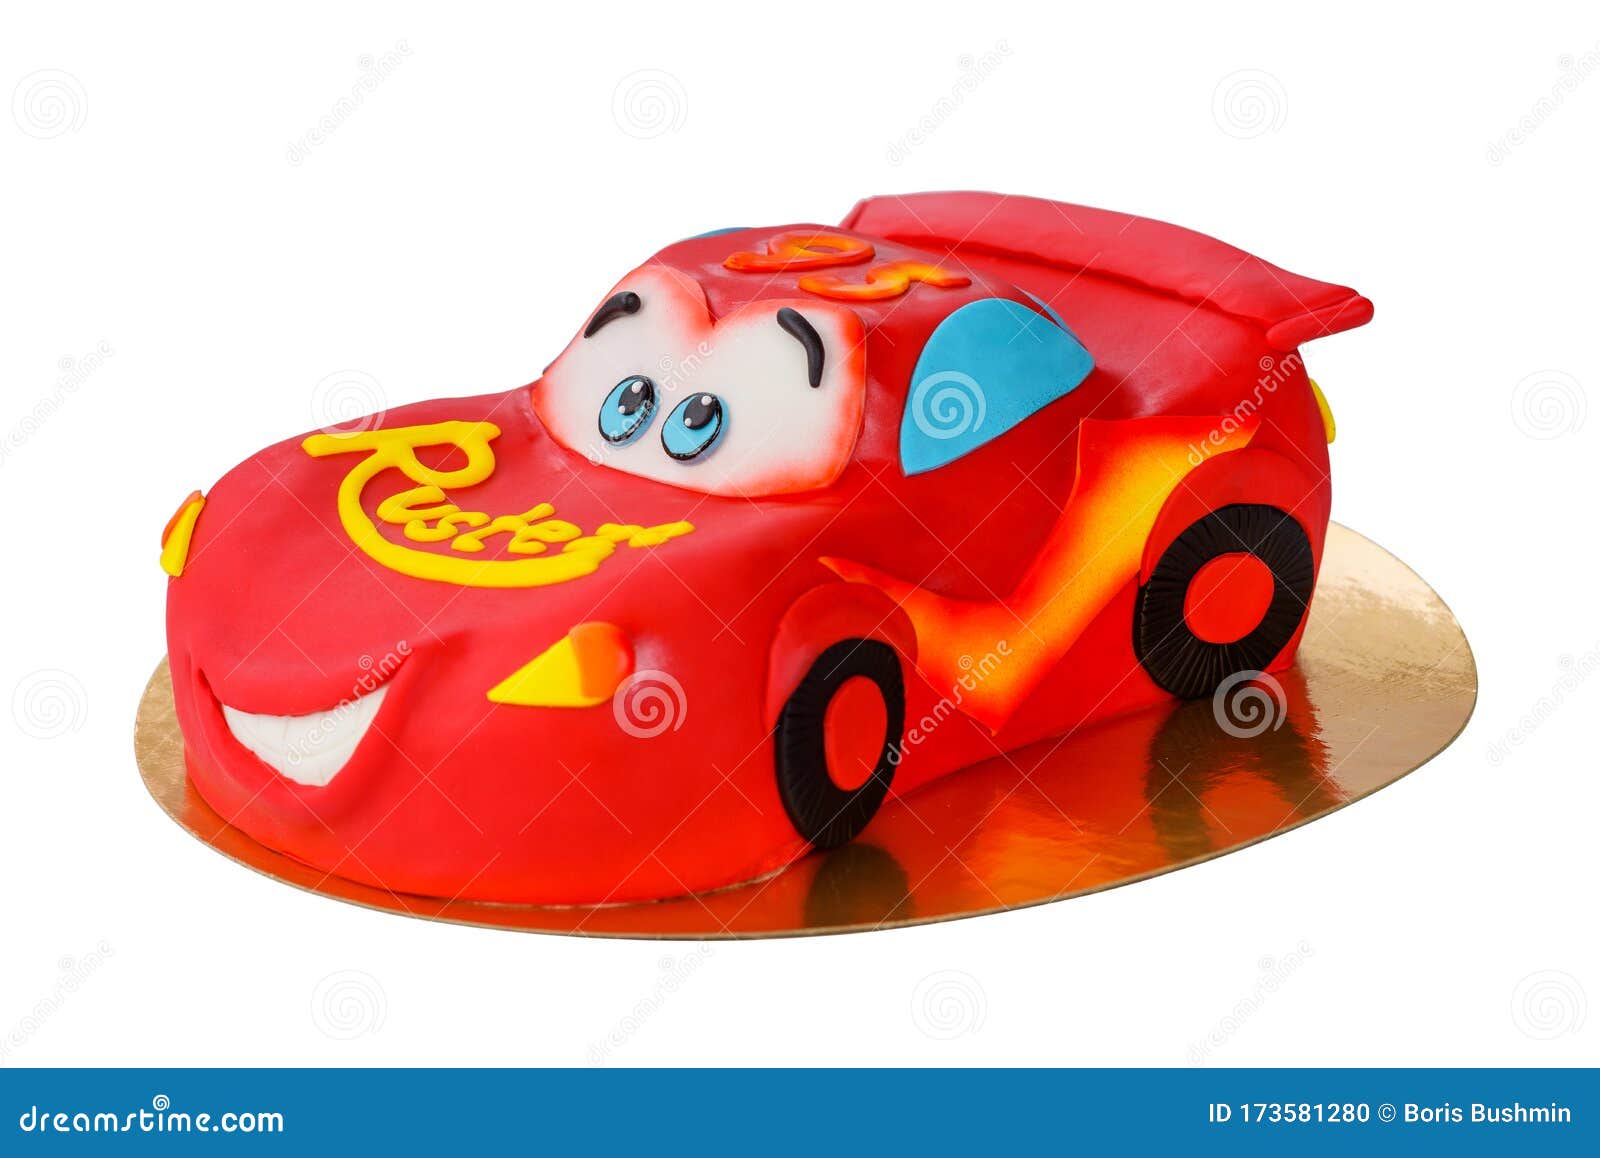 bolo infantil tema carros